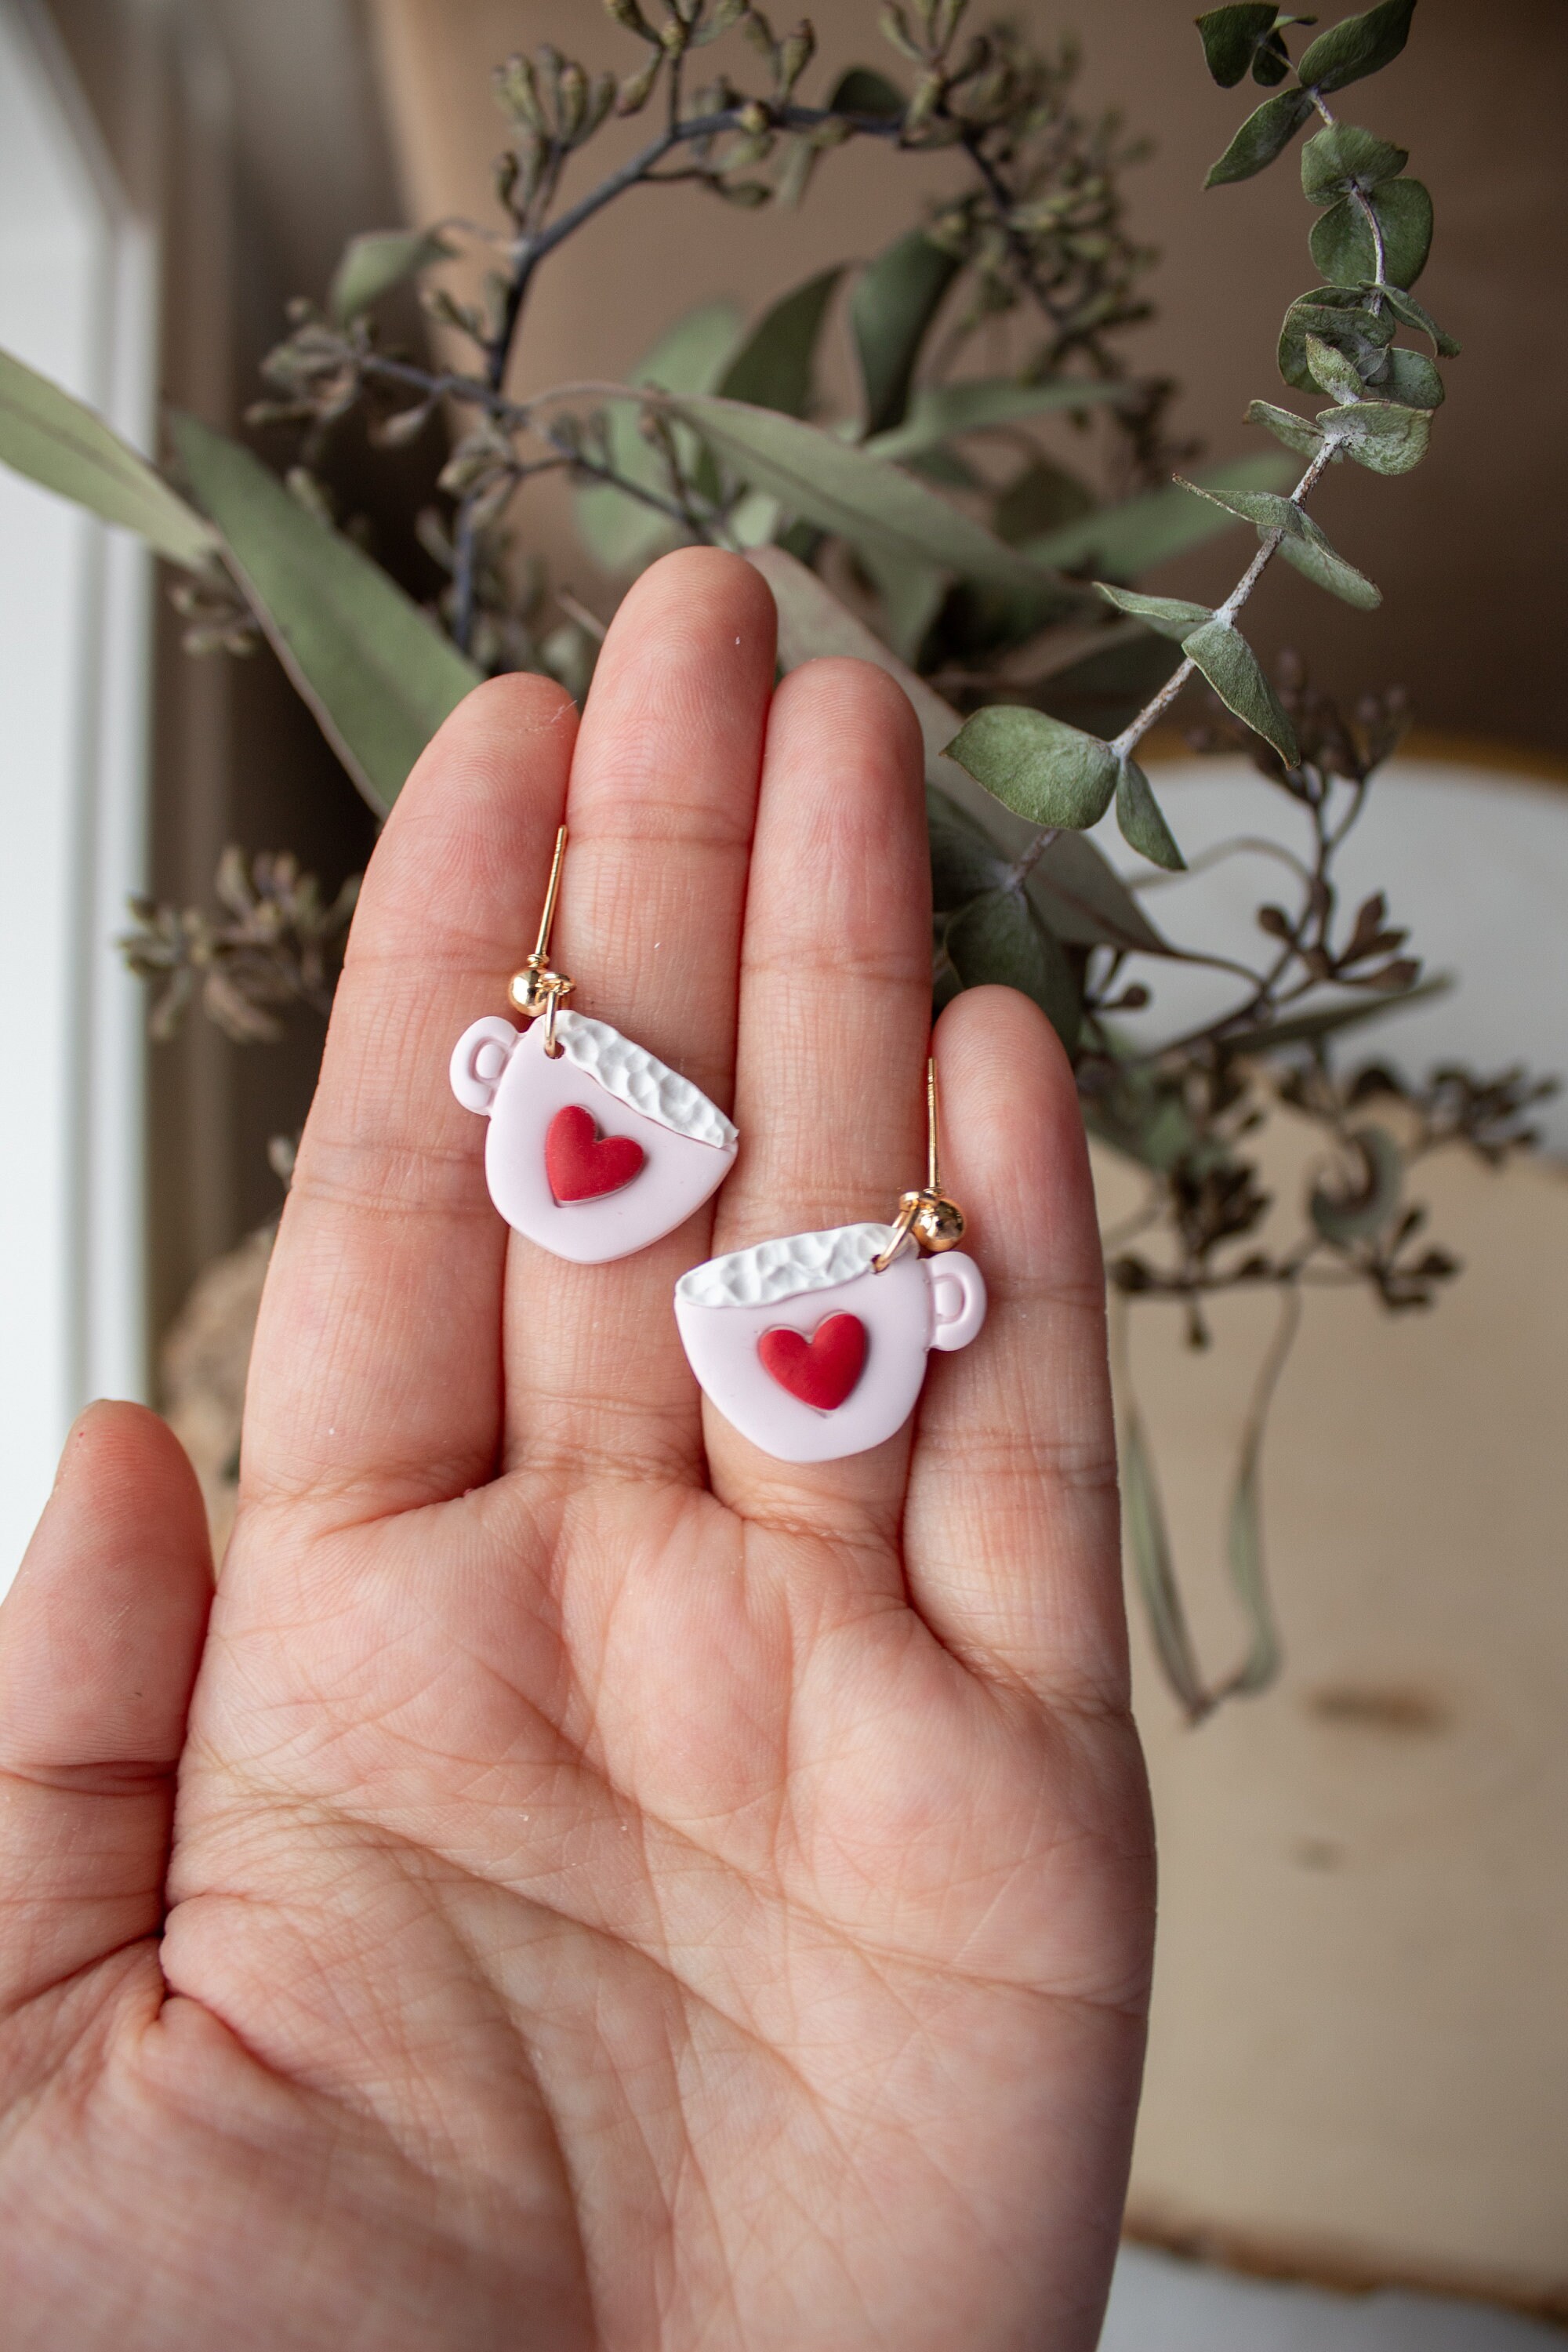 Valentines Day Earrings, Clay Earrings, Heart Earrings, 